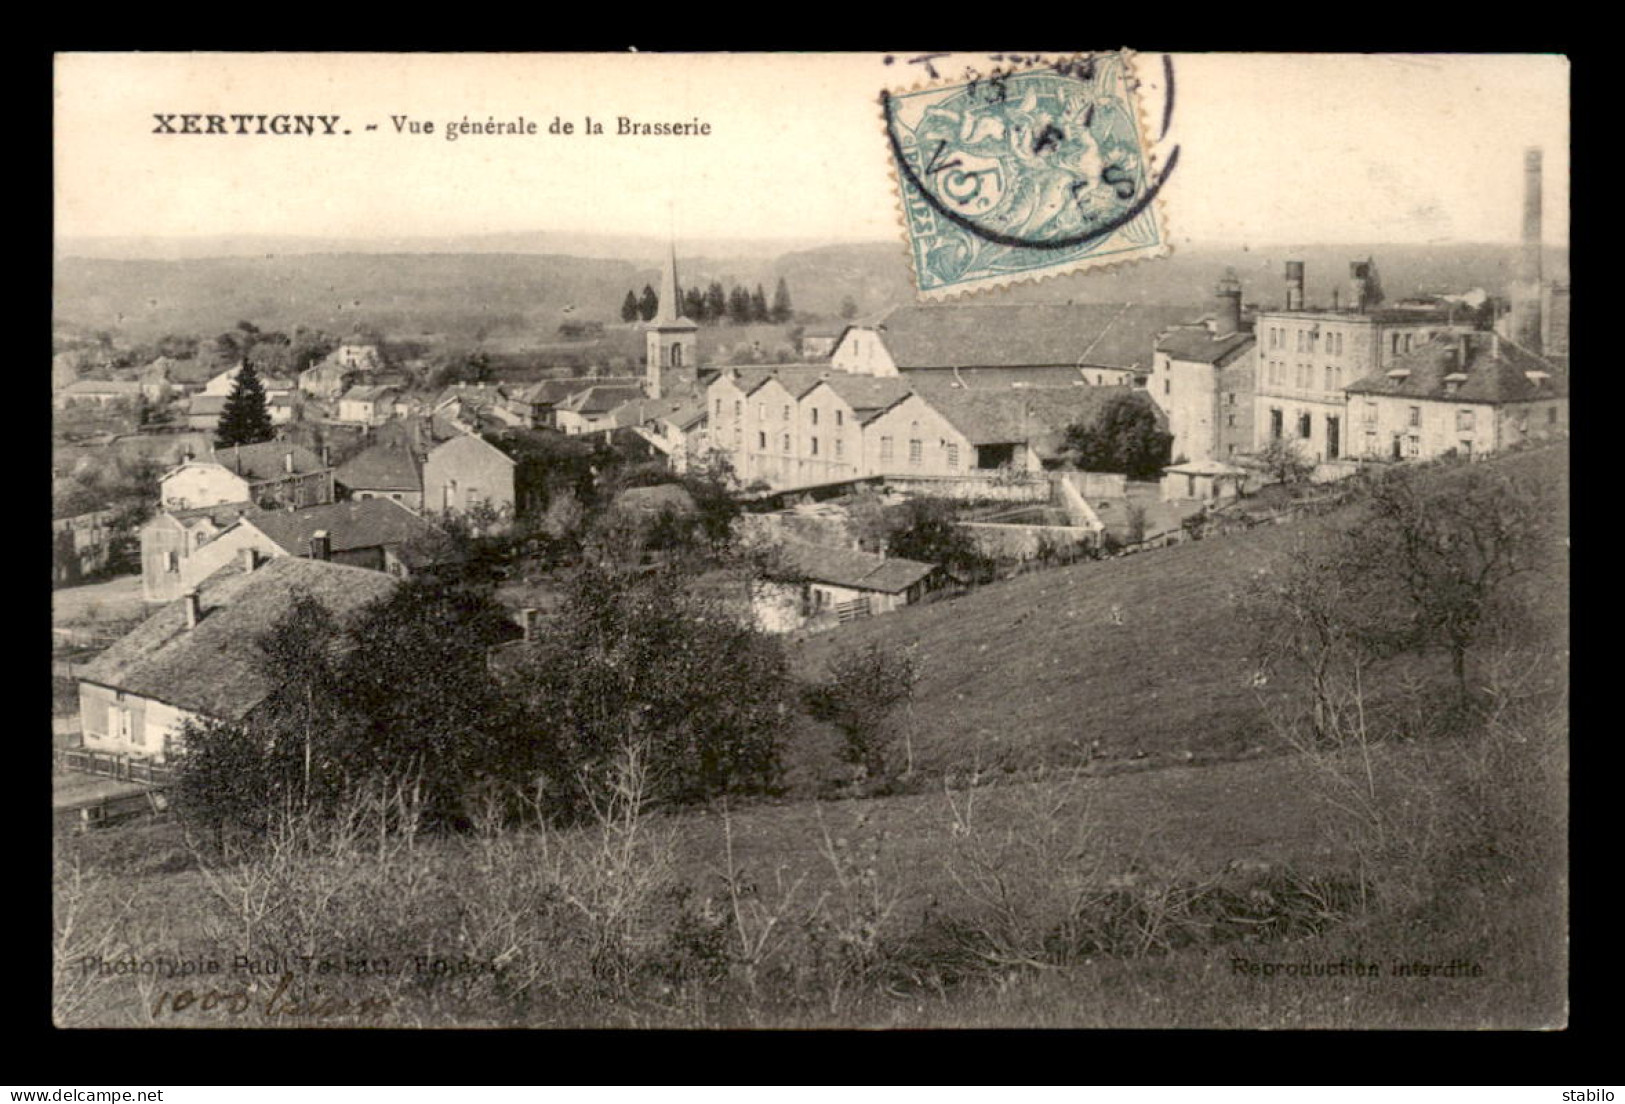 88 - XERTIGNY - VUE GENERALE DE LA BRASSERIE - BIERE - Xertigny